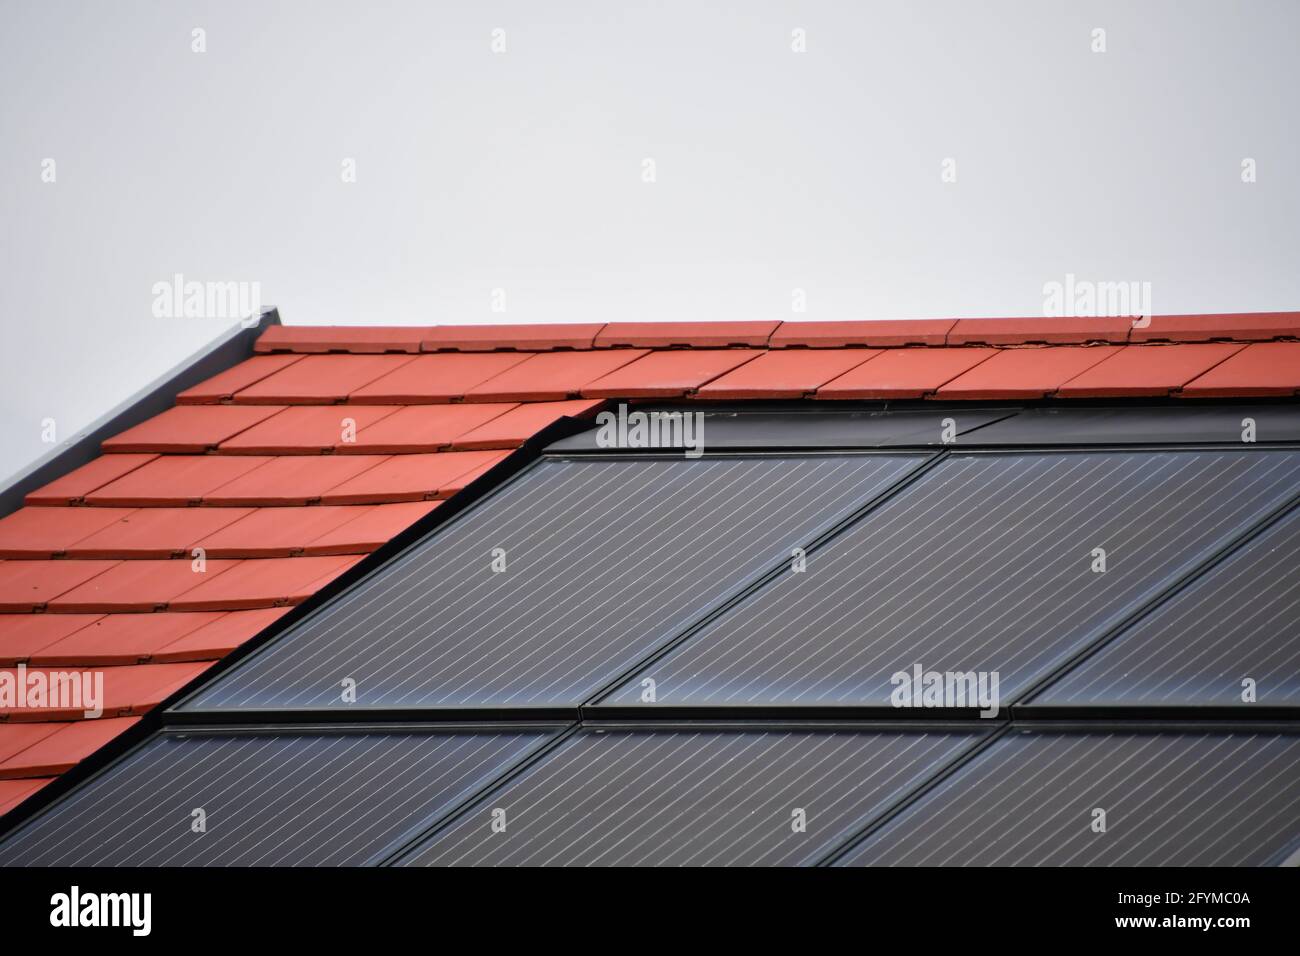 Solarmodule zur Stromerzeugung aus Sonnenlicht, integriert in das Dach eines Einfamilienhauses vor dem Himmel Stockfoto